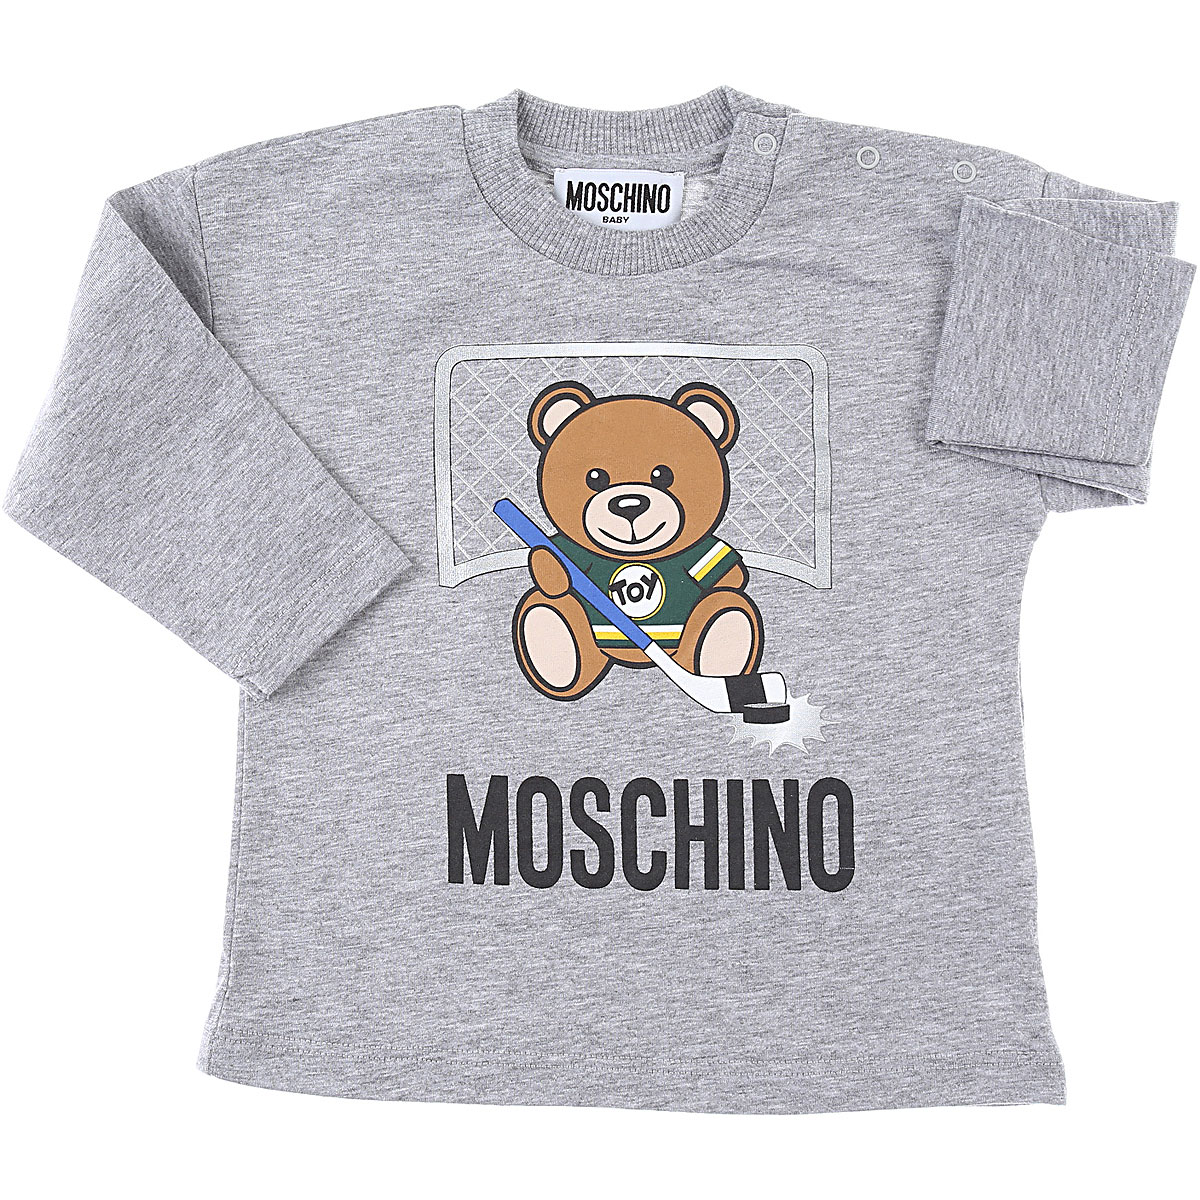 Moschino Baby T-Shirt für Jungen Günstig im Sale, Grau, Baumwolle, 2017, 12 M 18M 24M 2Y 3Y 6M 9M